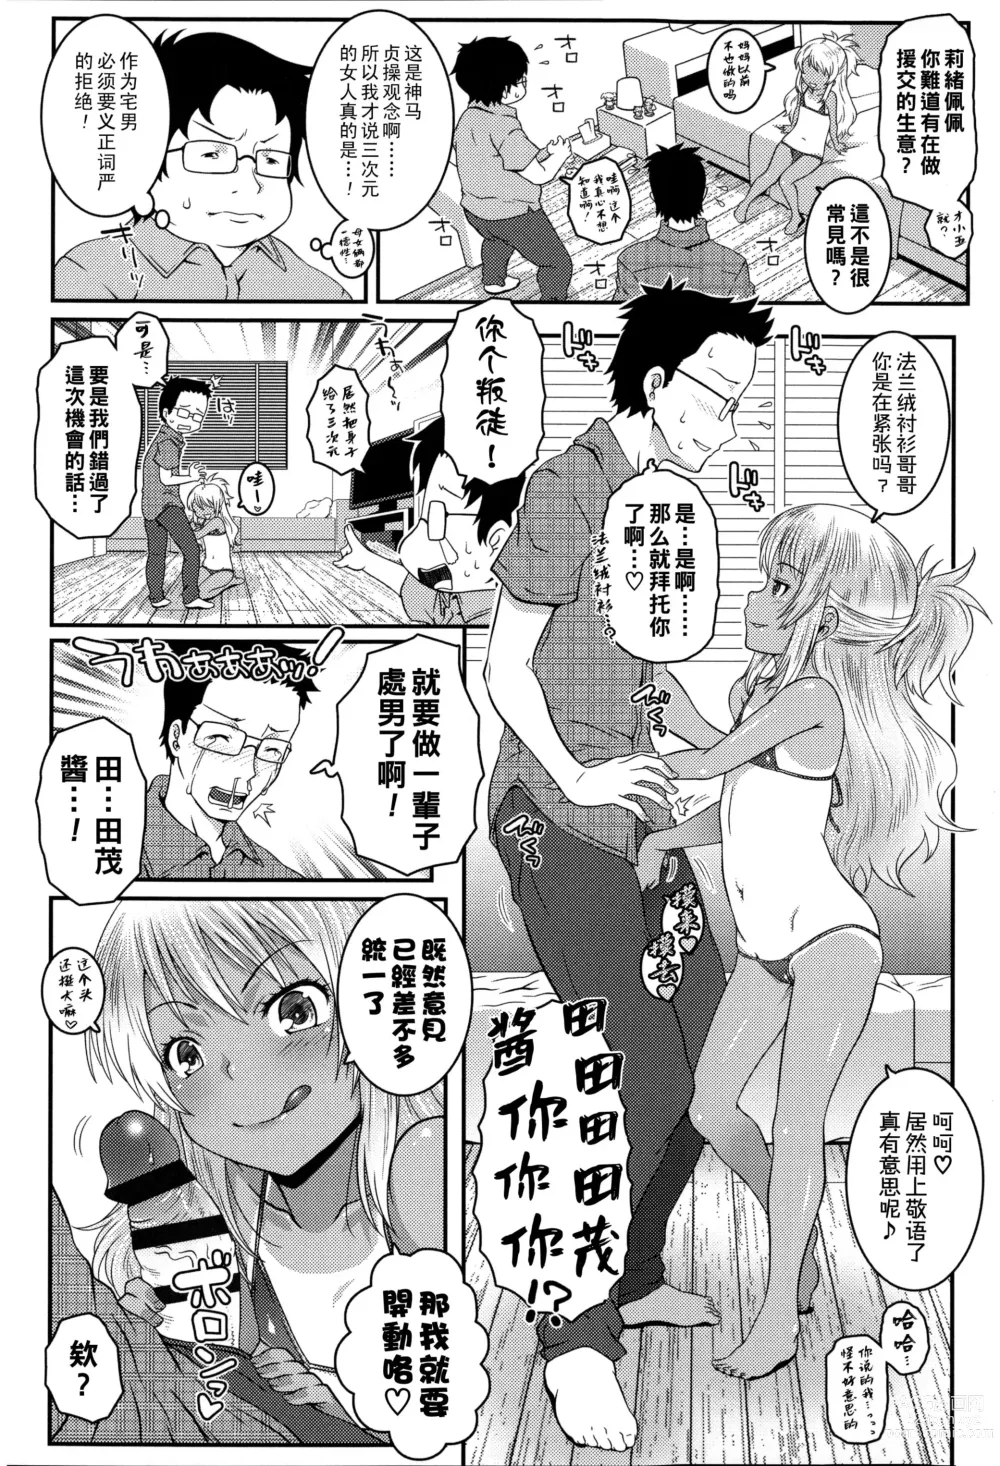 Page 4 of manga Bitch!!